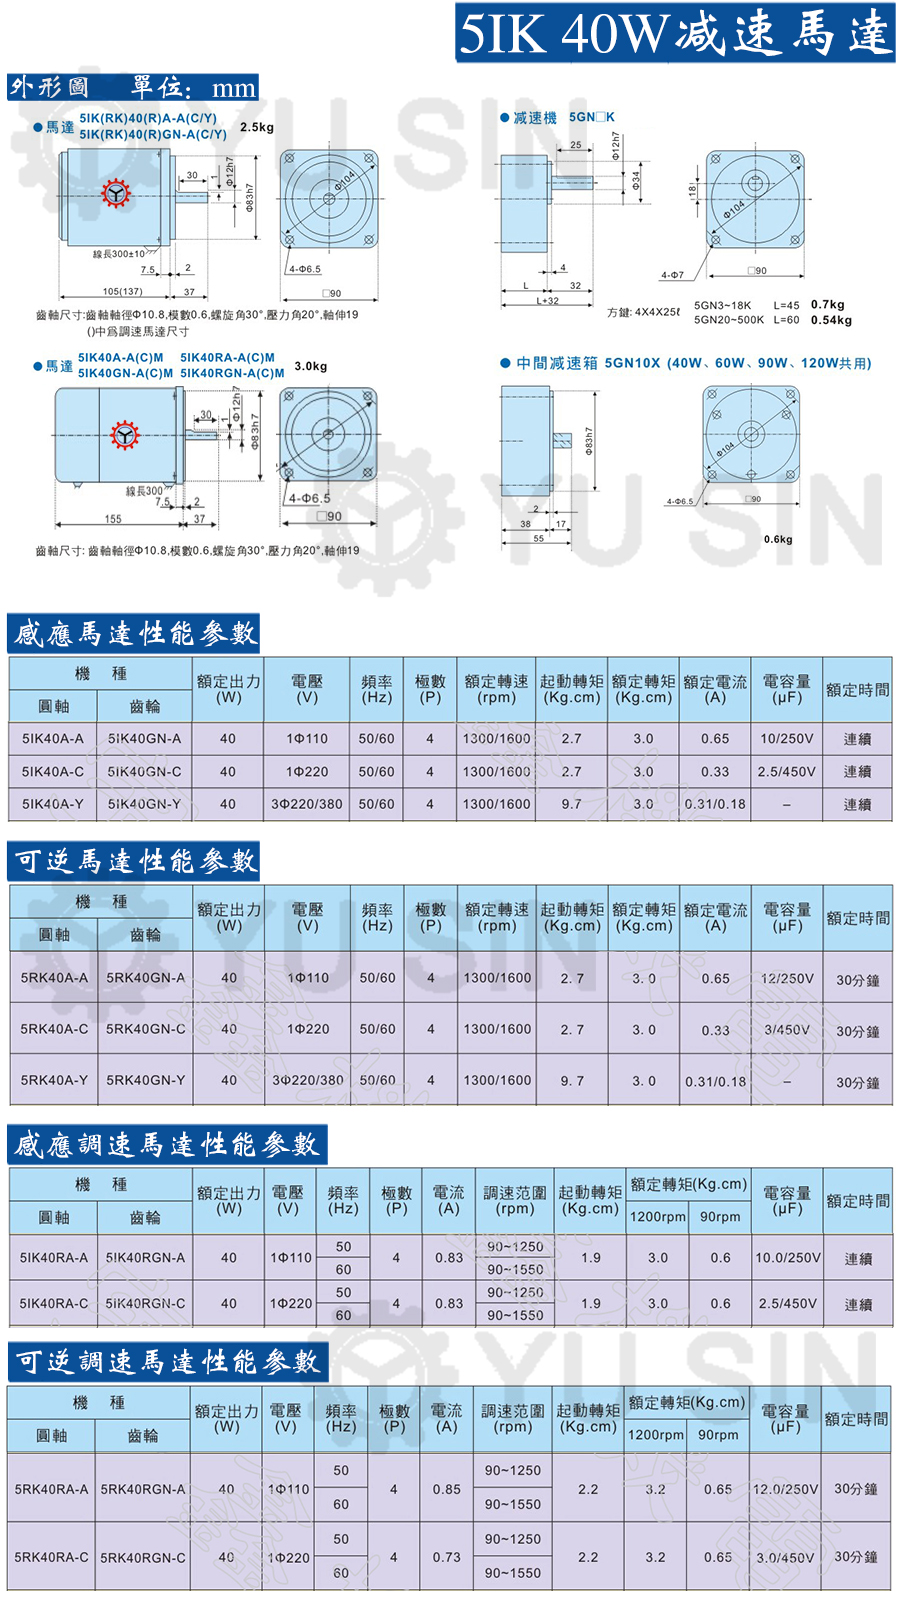 宇鑫5IK40RGN微型调速电机尺寸图